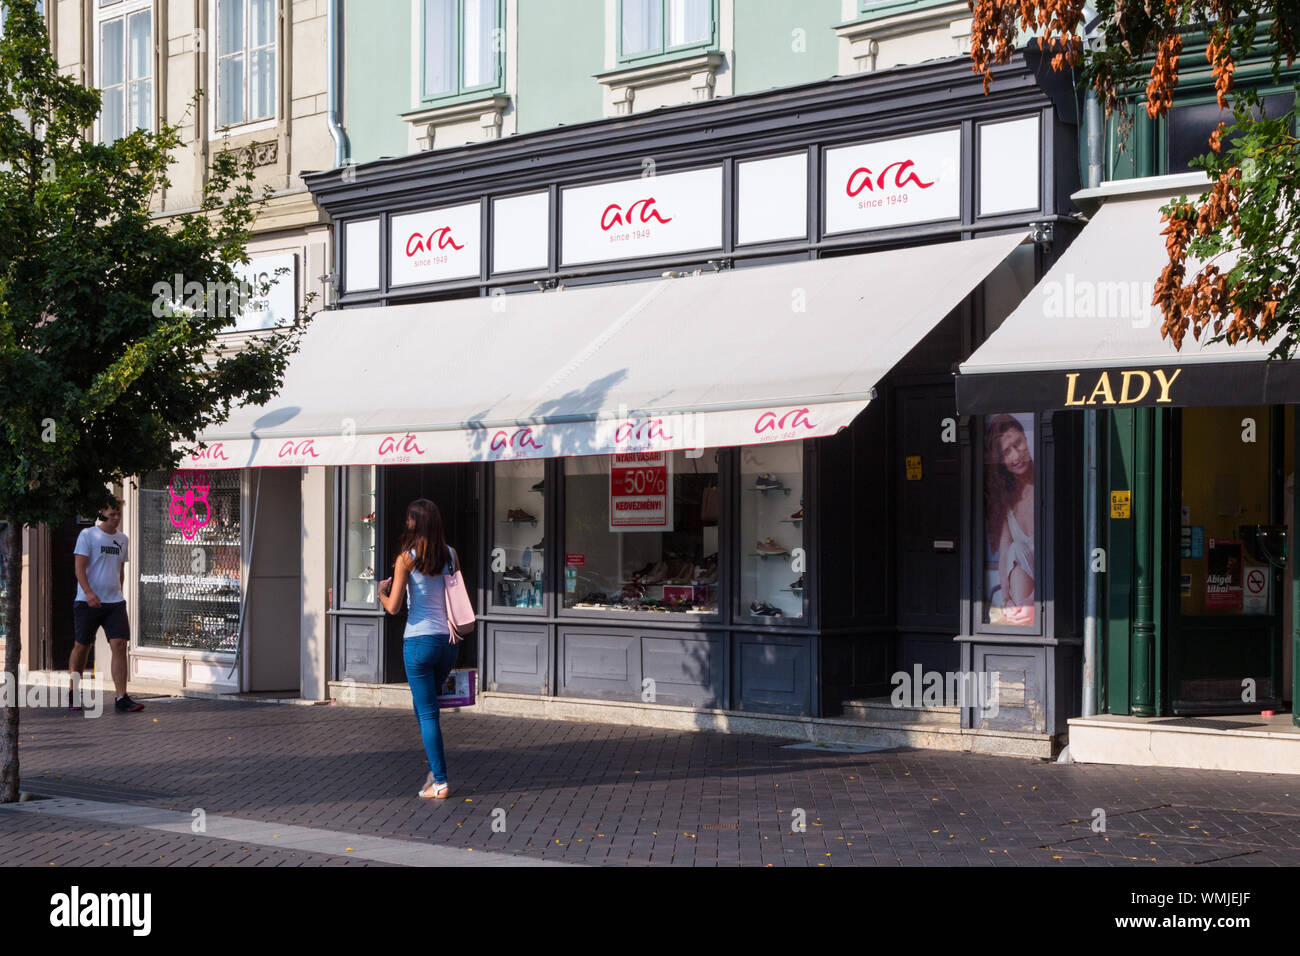 Magasin de chaussures Ara shopfront dans Várkerület, Sopron, Hongrie Banque D'Images